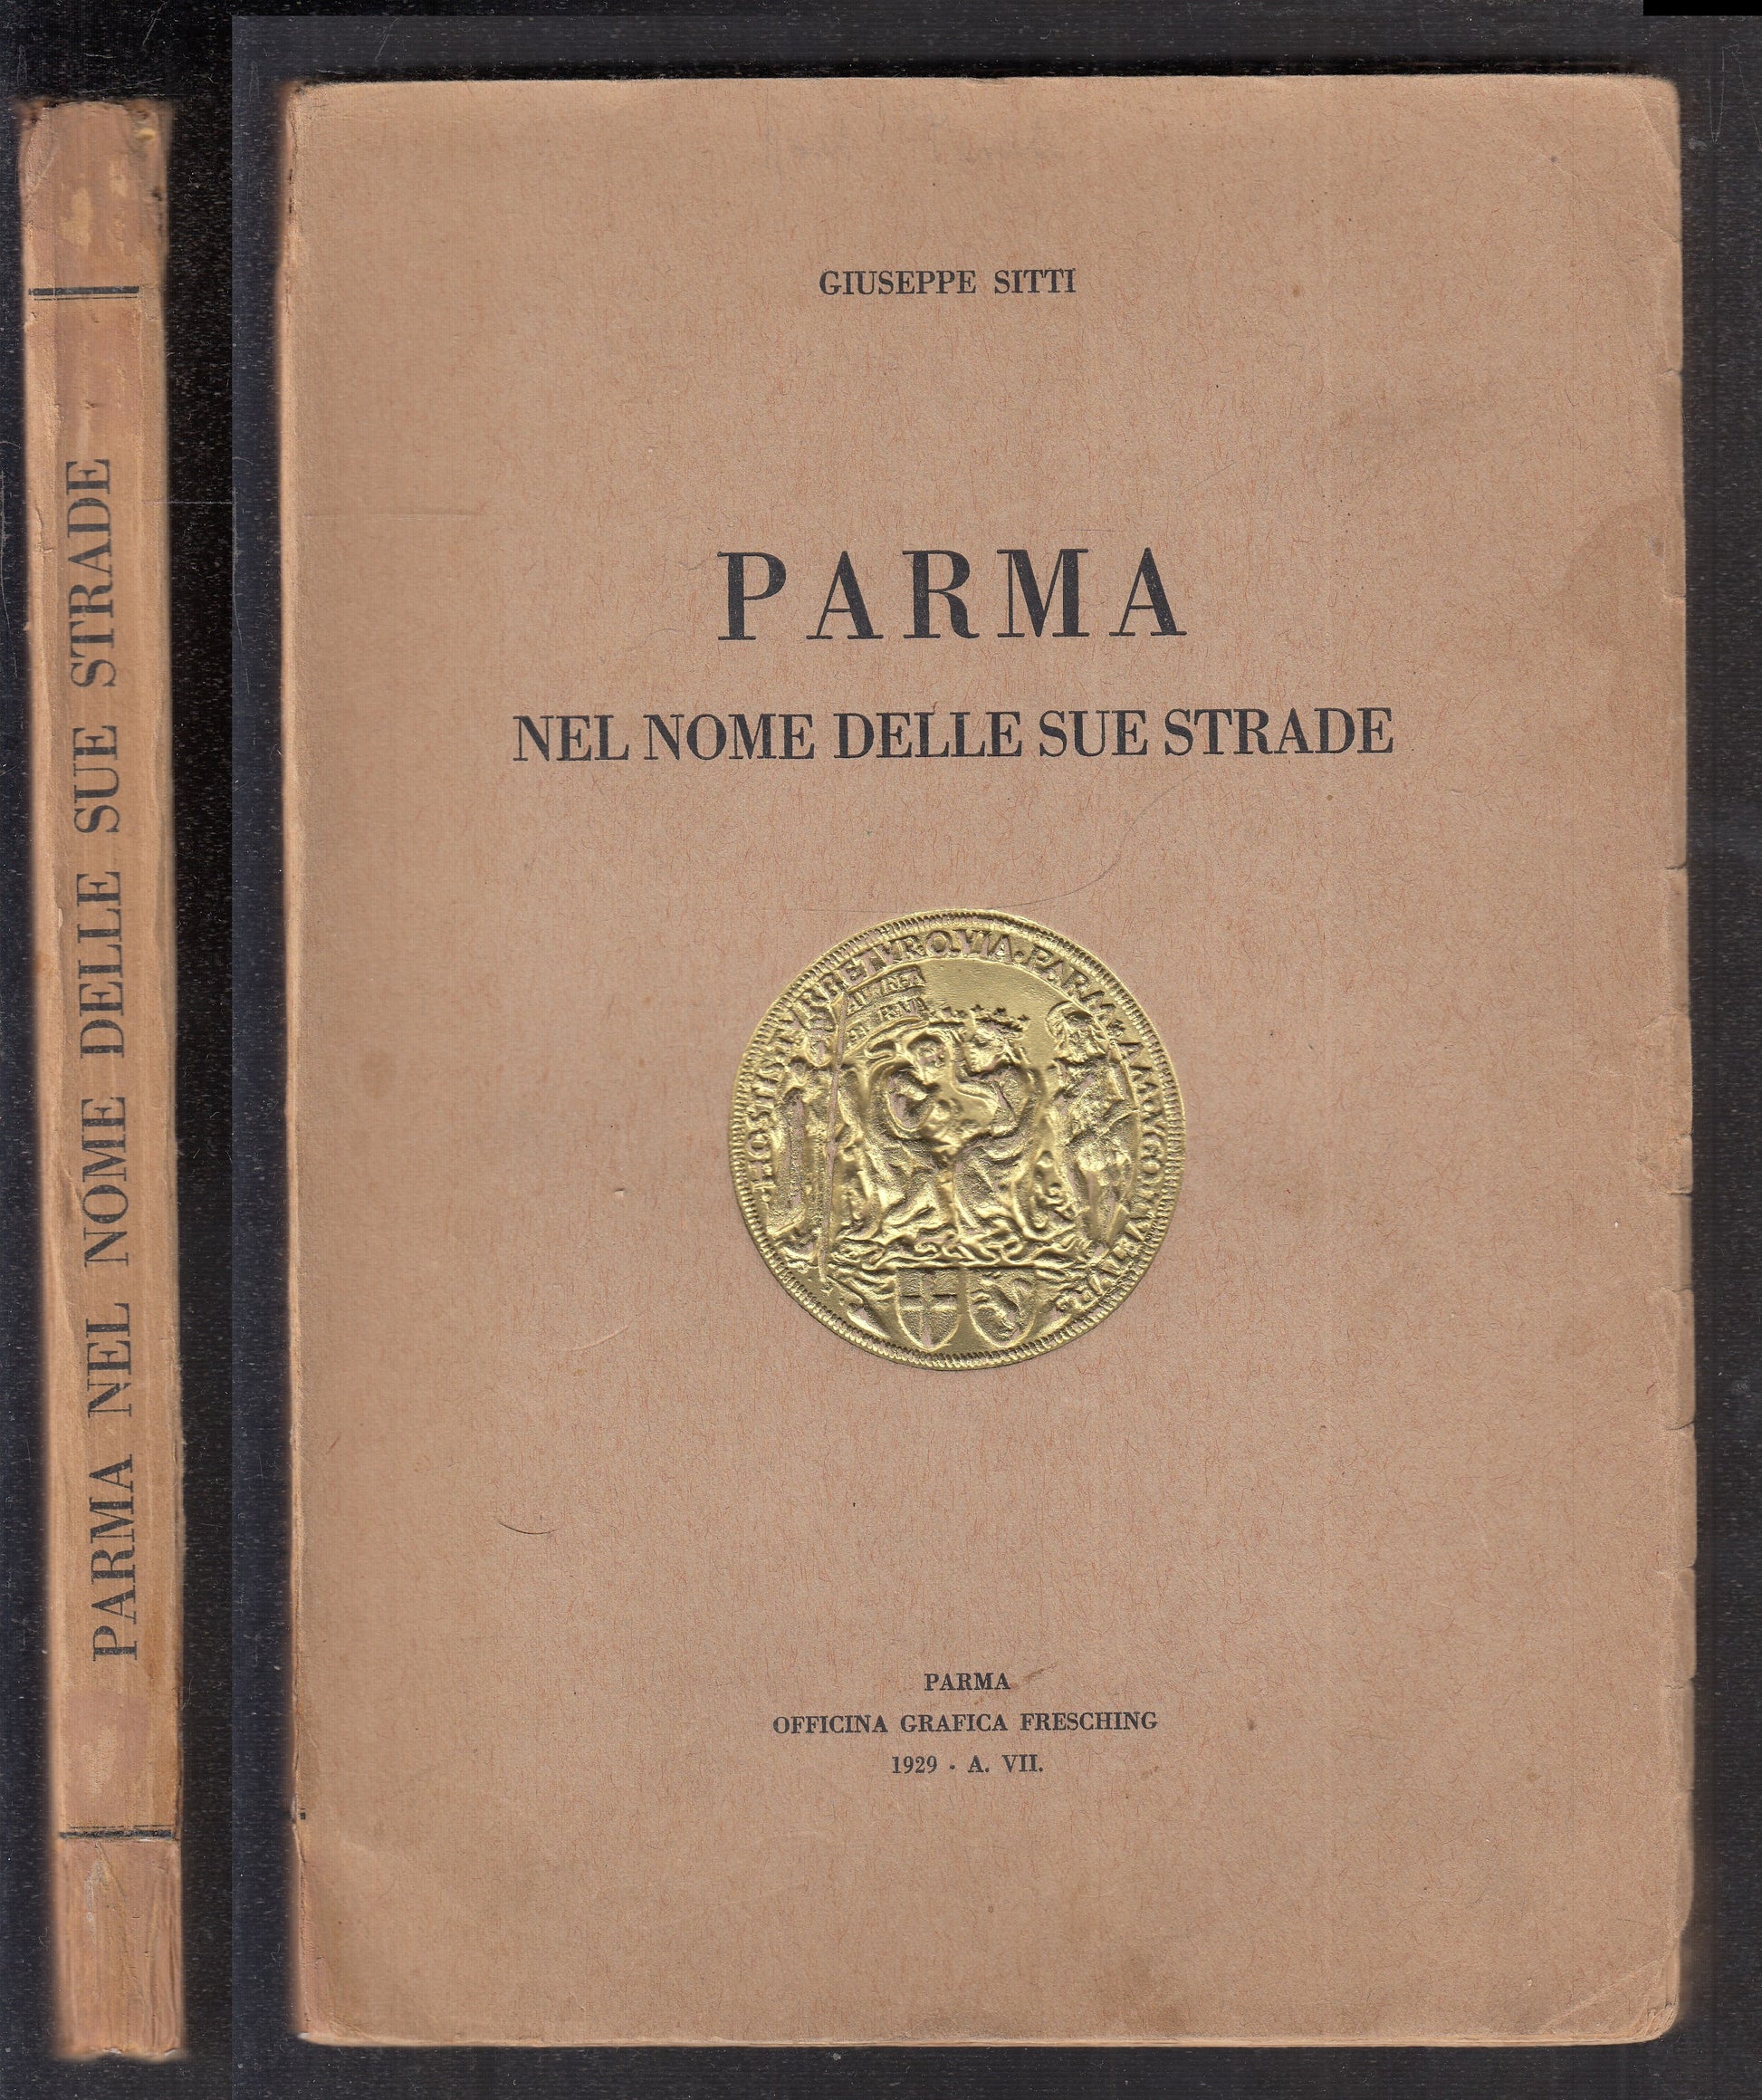 LV- PARMA NEL NOME DELLE SUE STRADE - GIUSEPPE SETTI - FRESCHING--- 1929- B- WPR